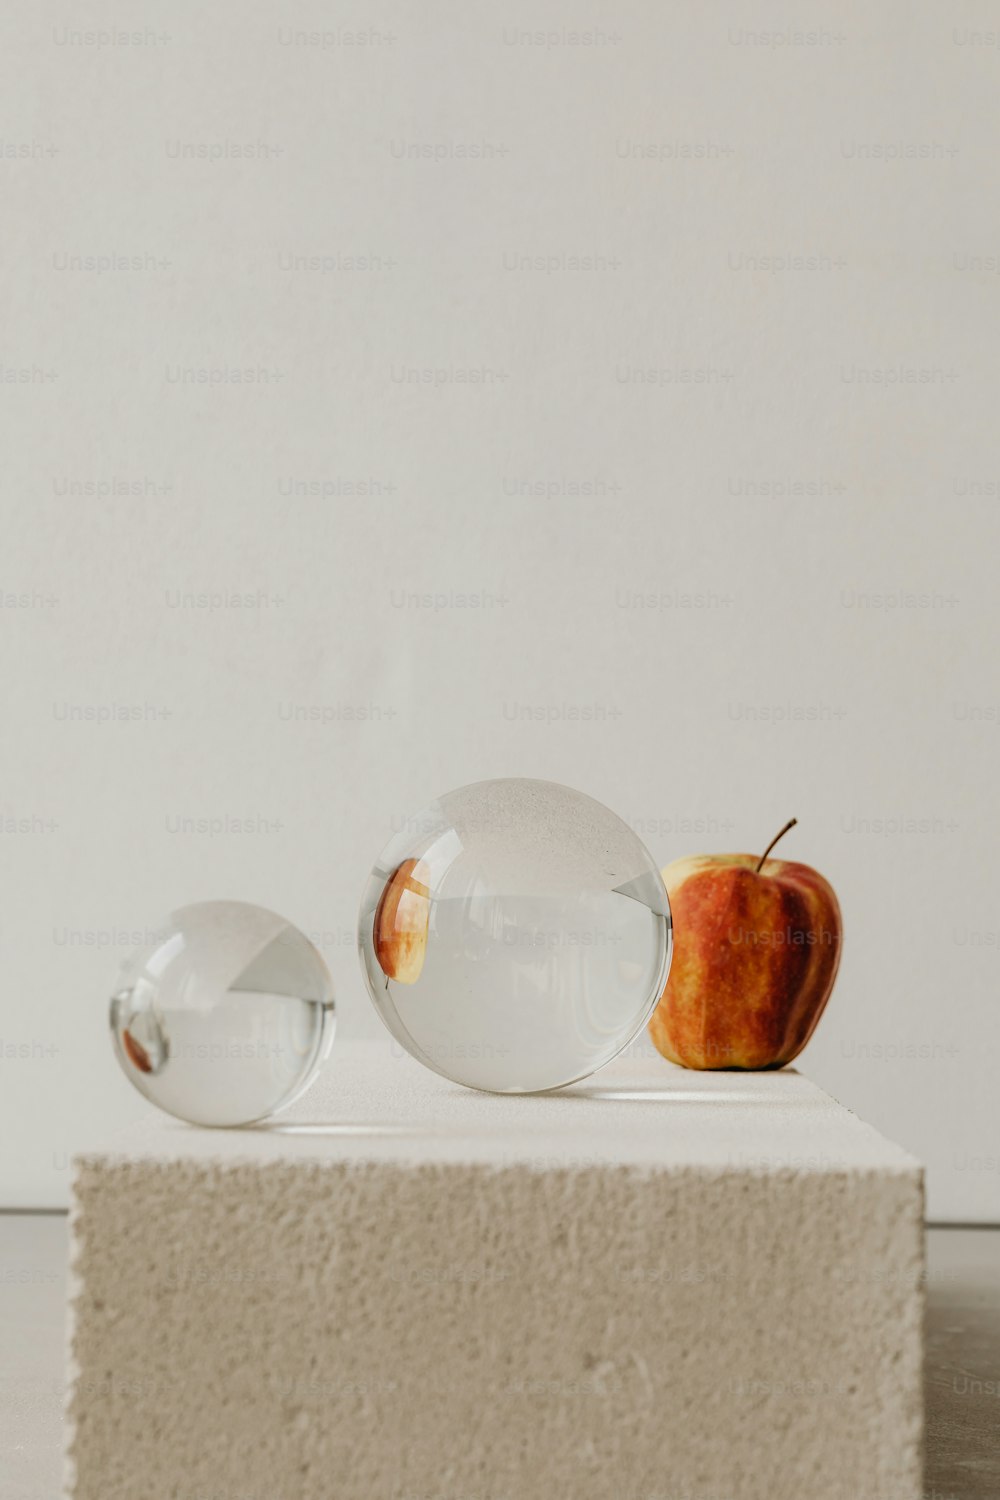 하얀 표면에 사과와 두 개의 유리 공